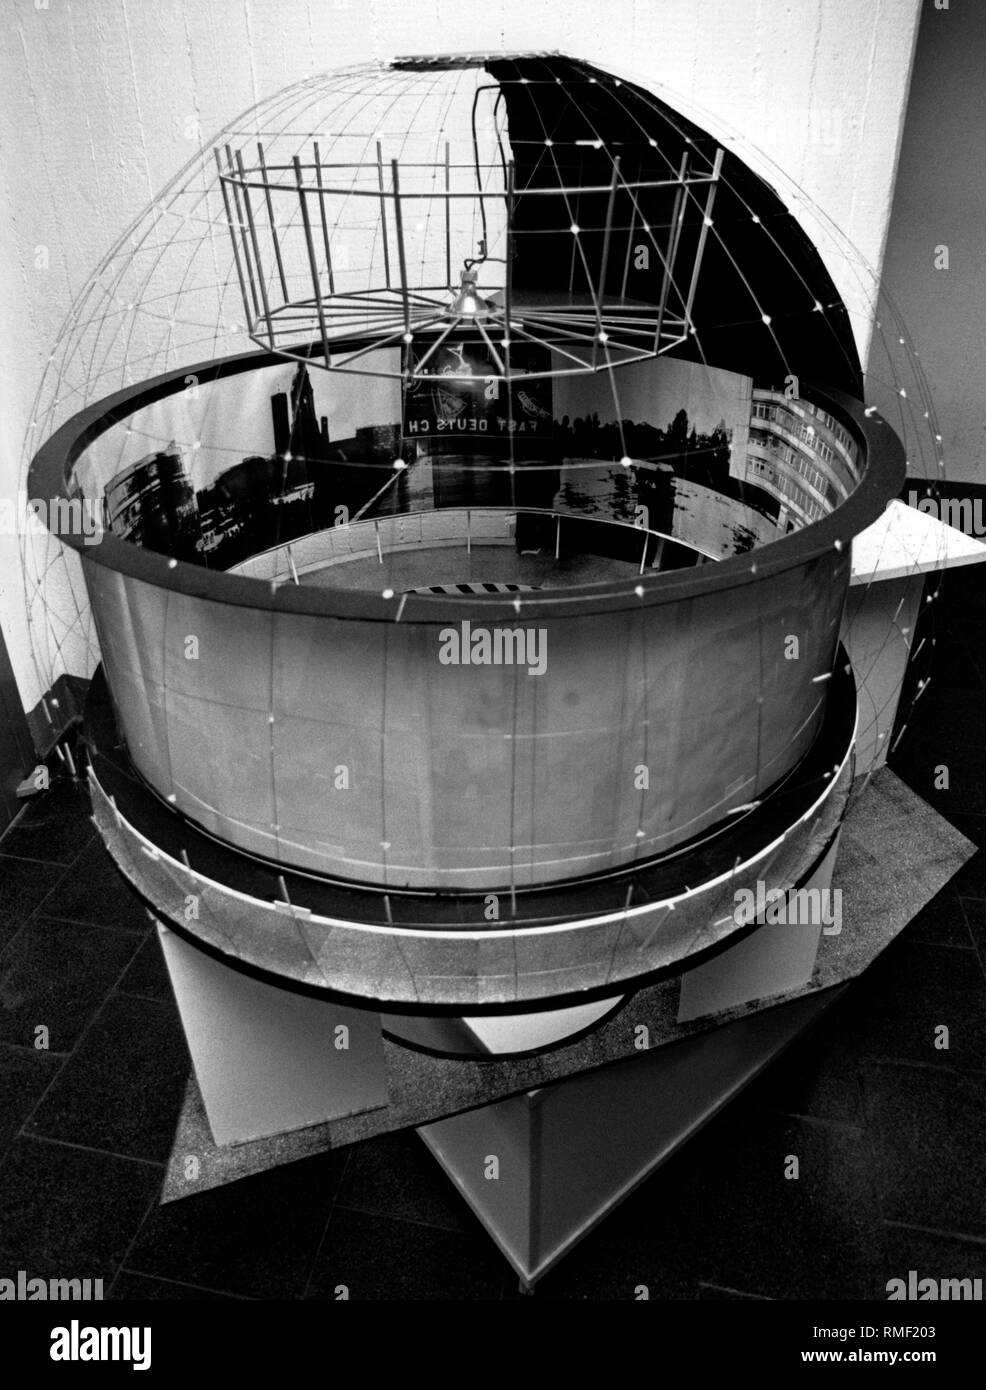 Modello di cinema "Panorama", che si è aperto il 20.12.1989 come il mondo il primo cinema commerciale di presentare a 360 grado film, poi in Budapester Strasse 38 in vista della chiesa commemorativa. L'originale, la cosiddetta "Blaue Kugel' ('sfera blu") oggi si trova a Potsdam. Foto Stock